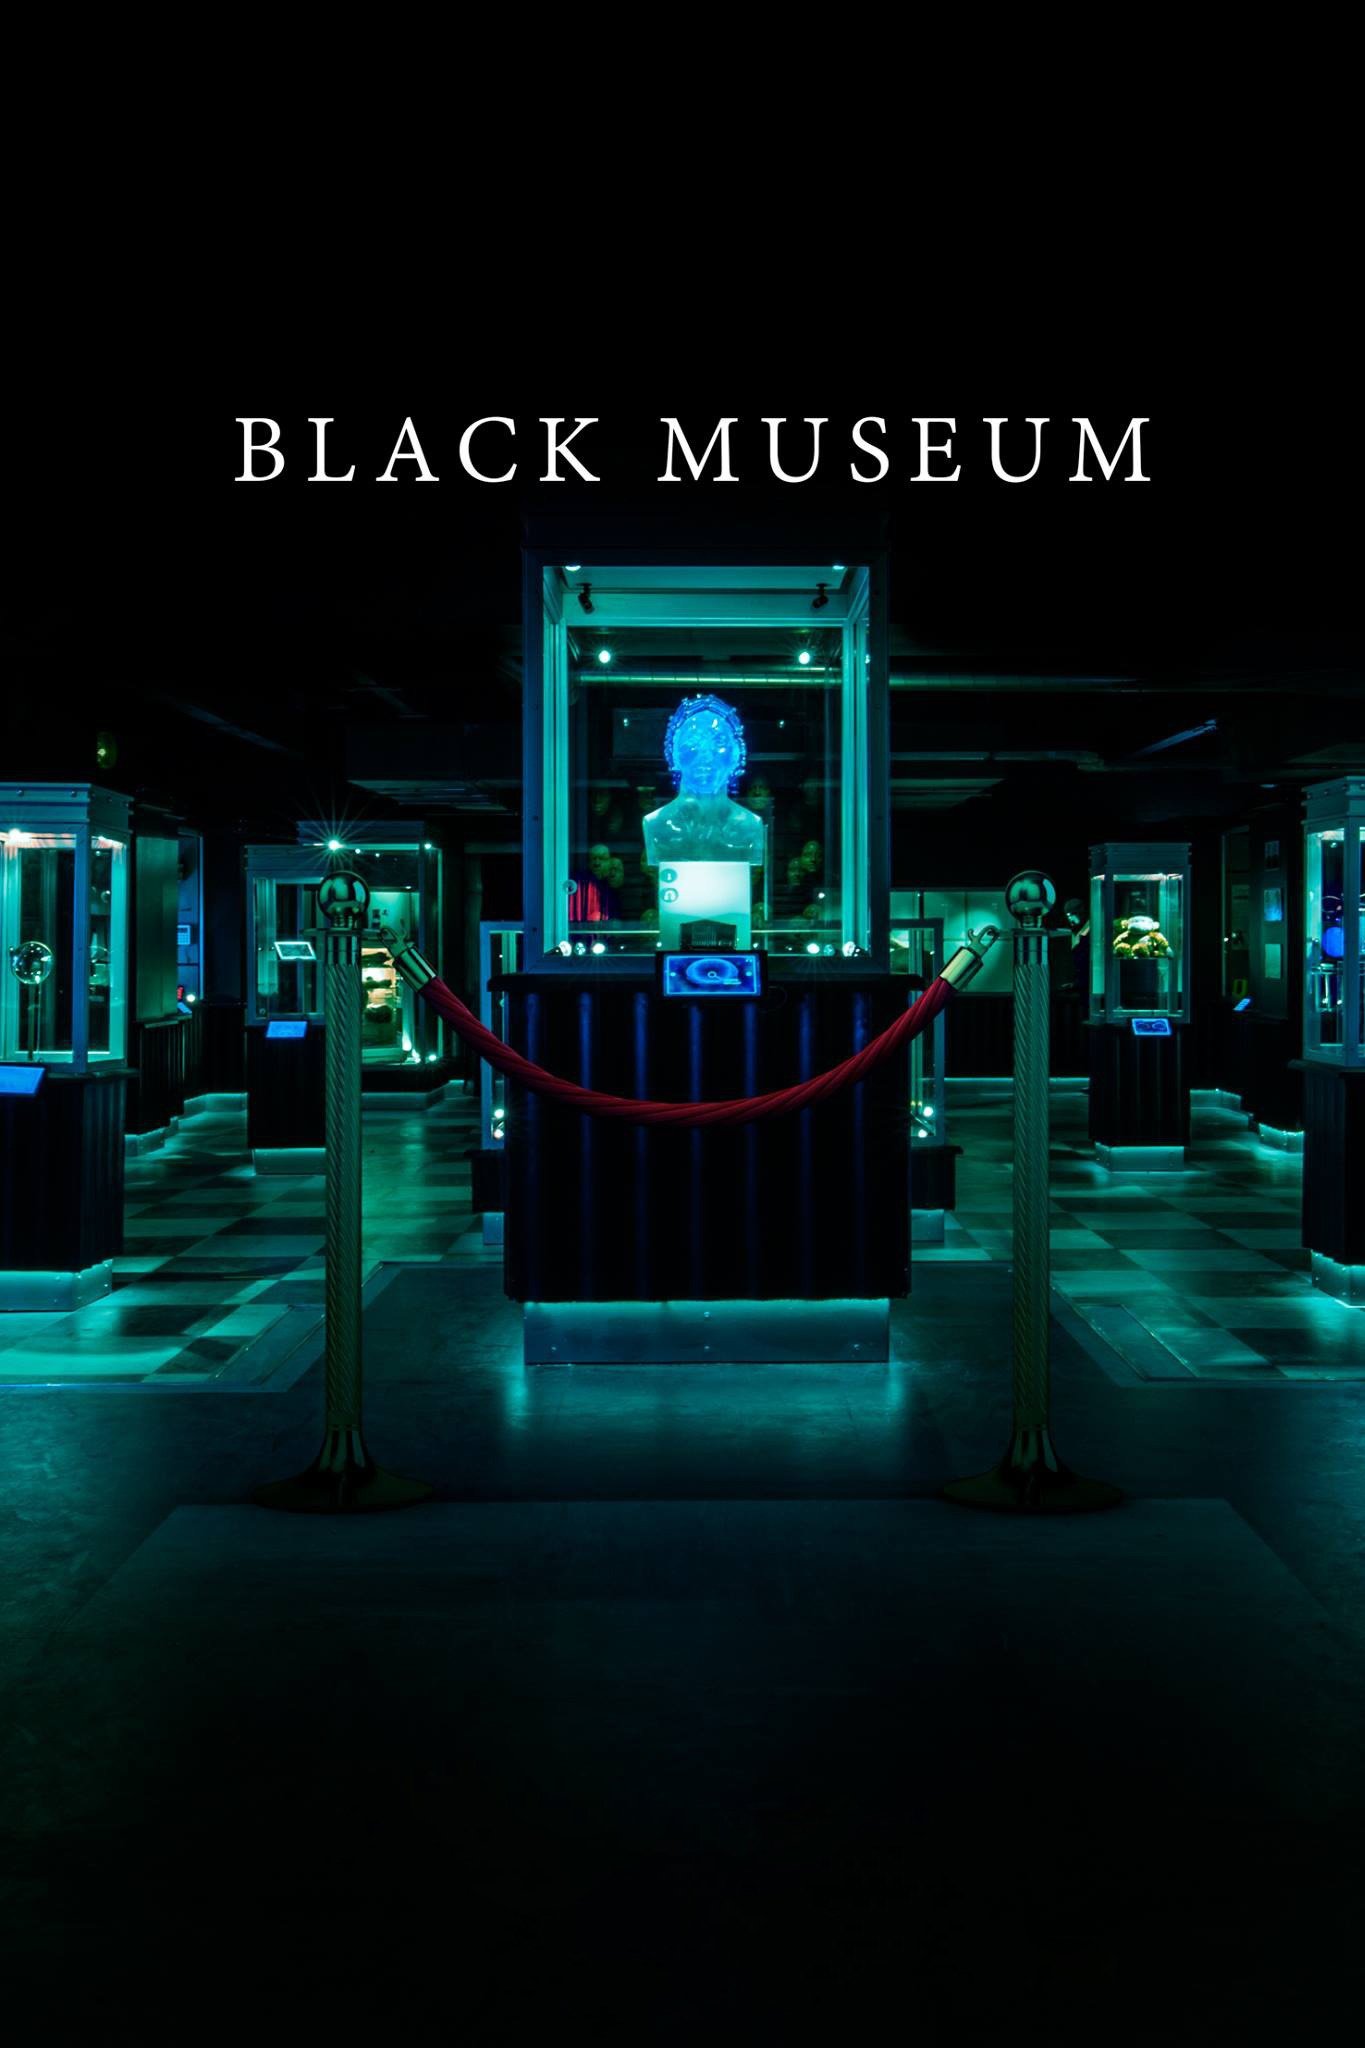 Black Mirror: Black Museum